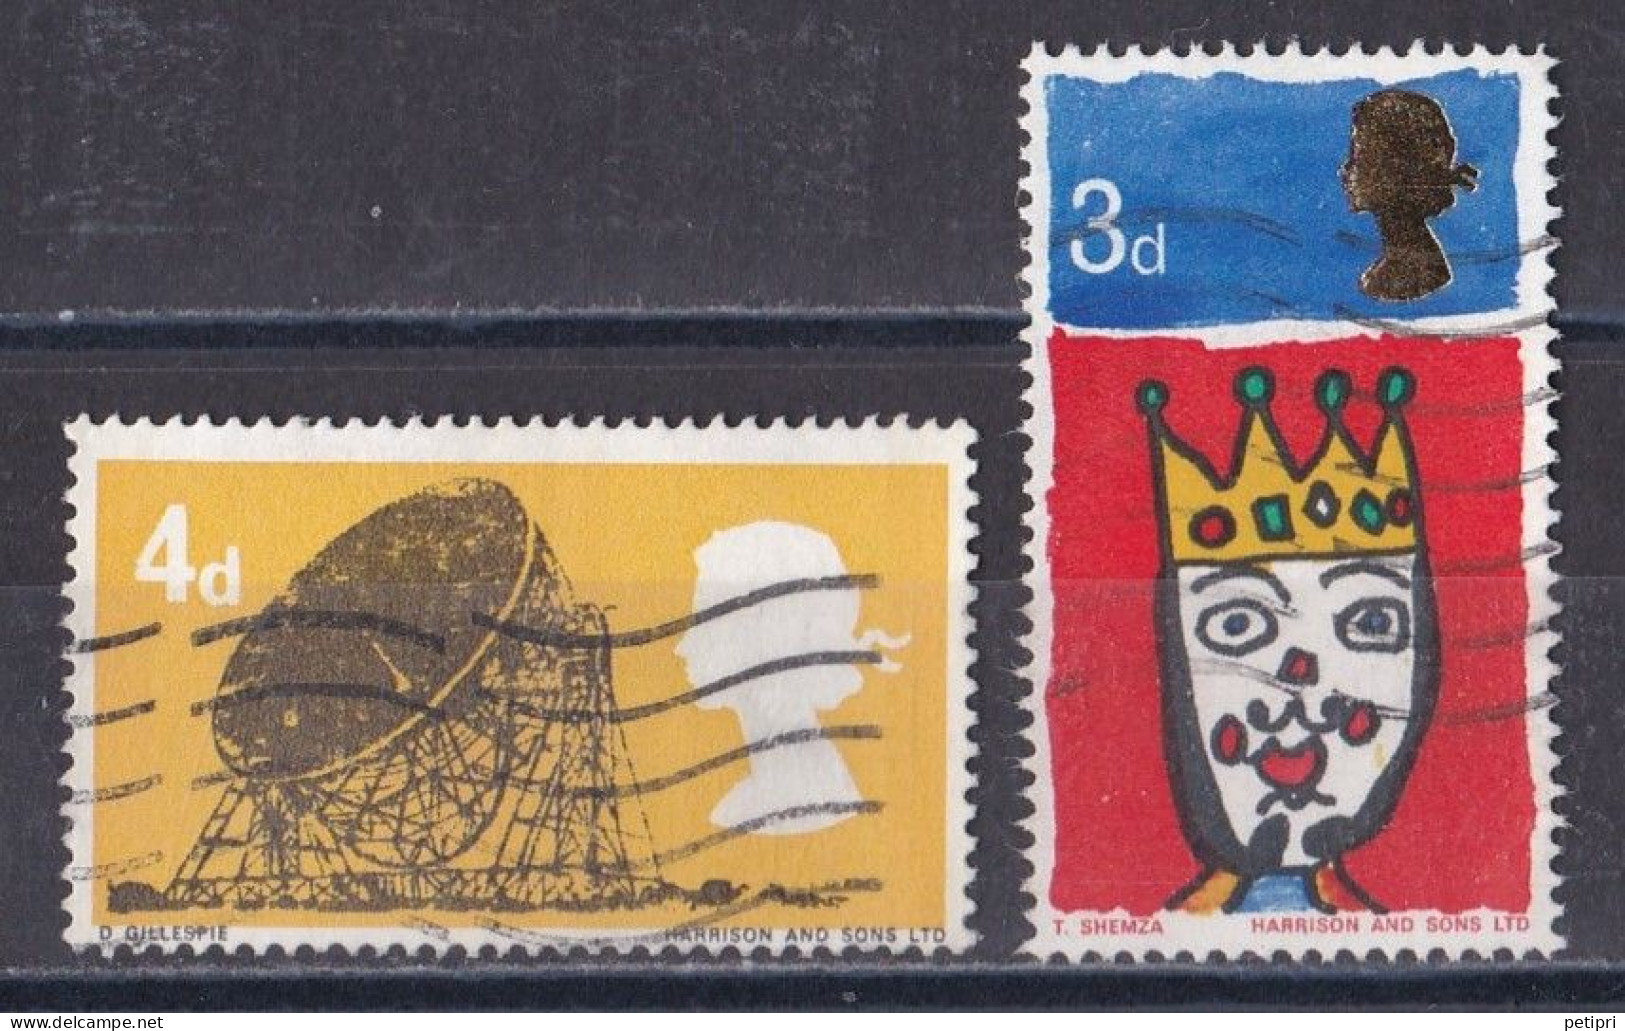 Grande Bretagne - 1952 - 1971 -  Elisabeth II -  Y&T N °  449  Et  461  Oblitérés - Used Stamps